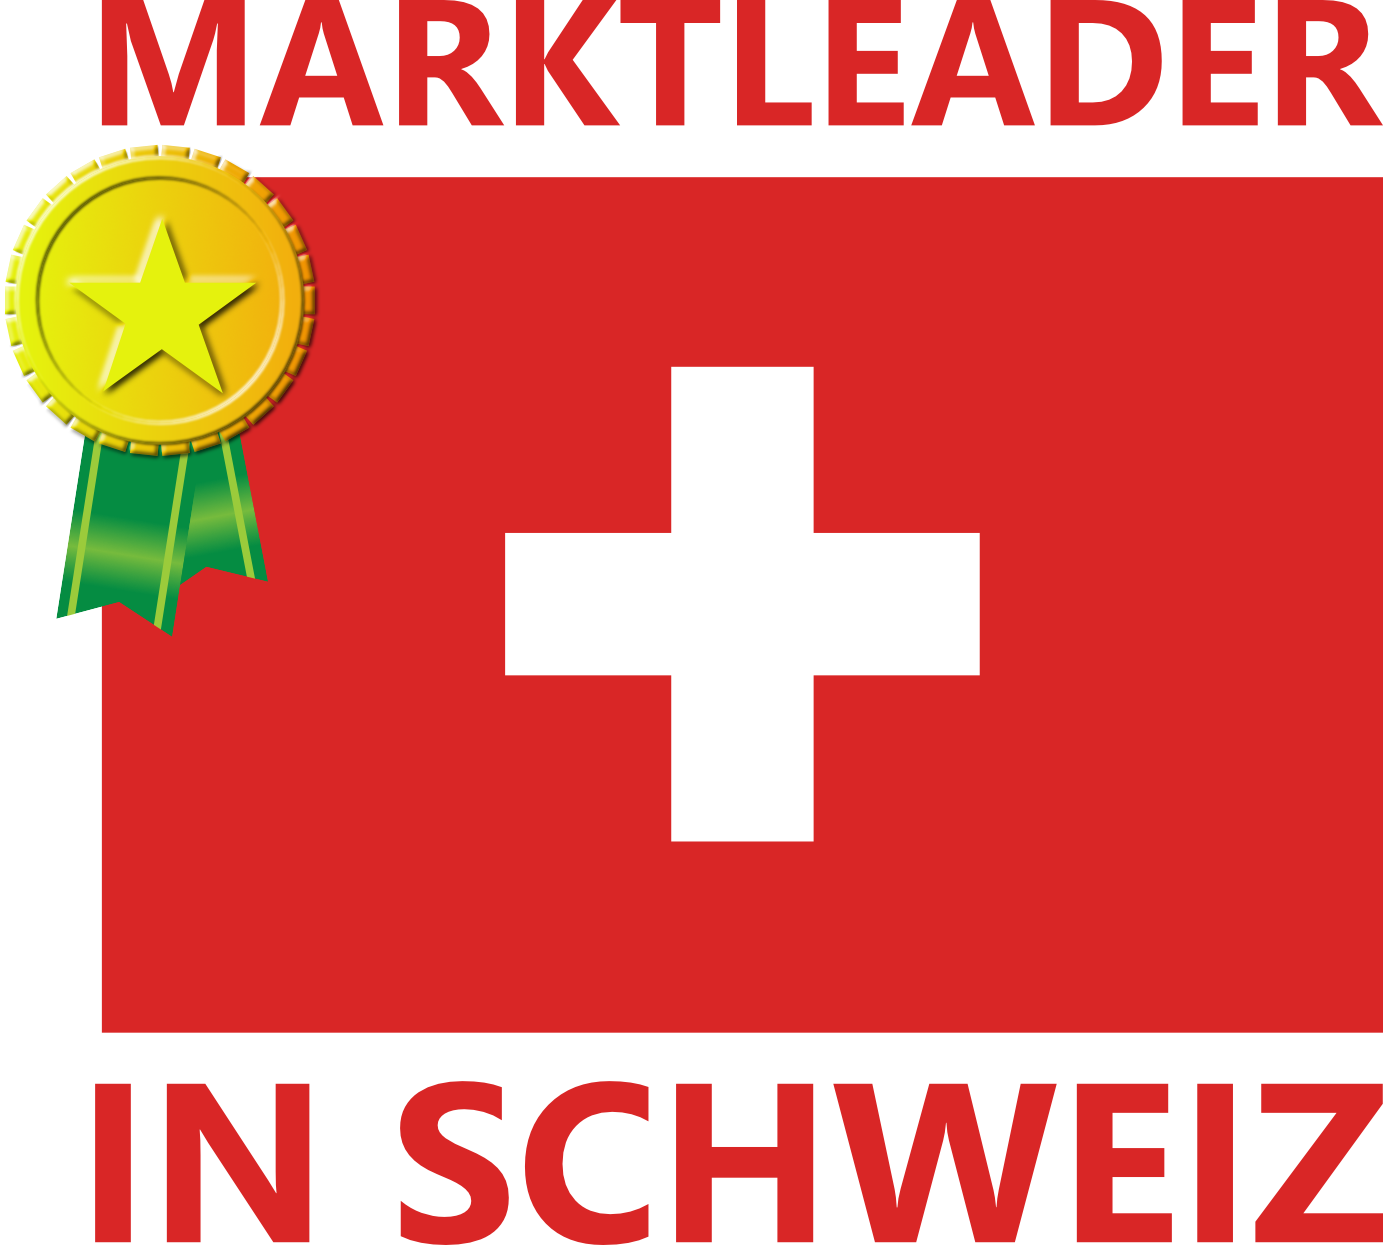 schweiz_marktleader_02-1-1-1-1-1.png